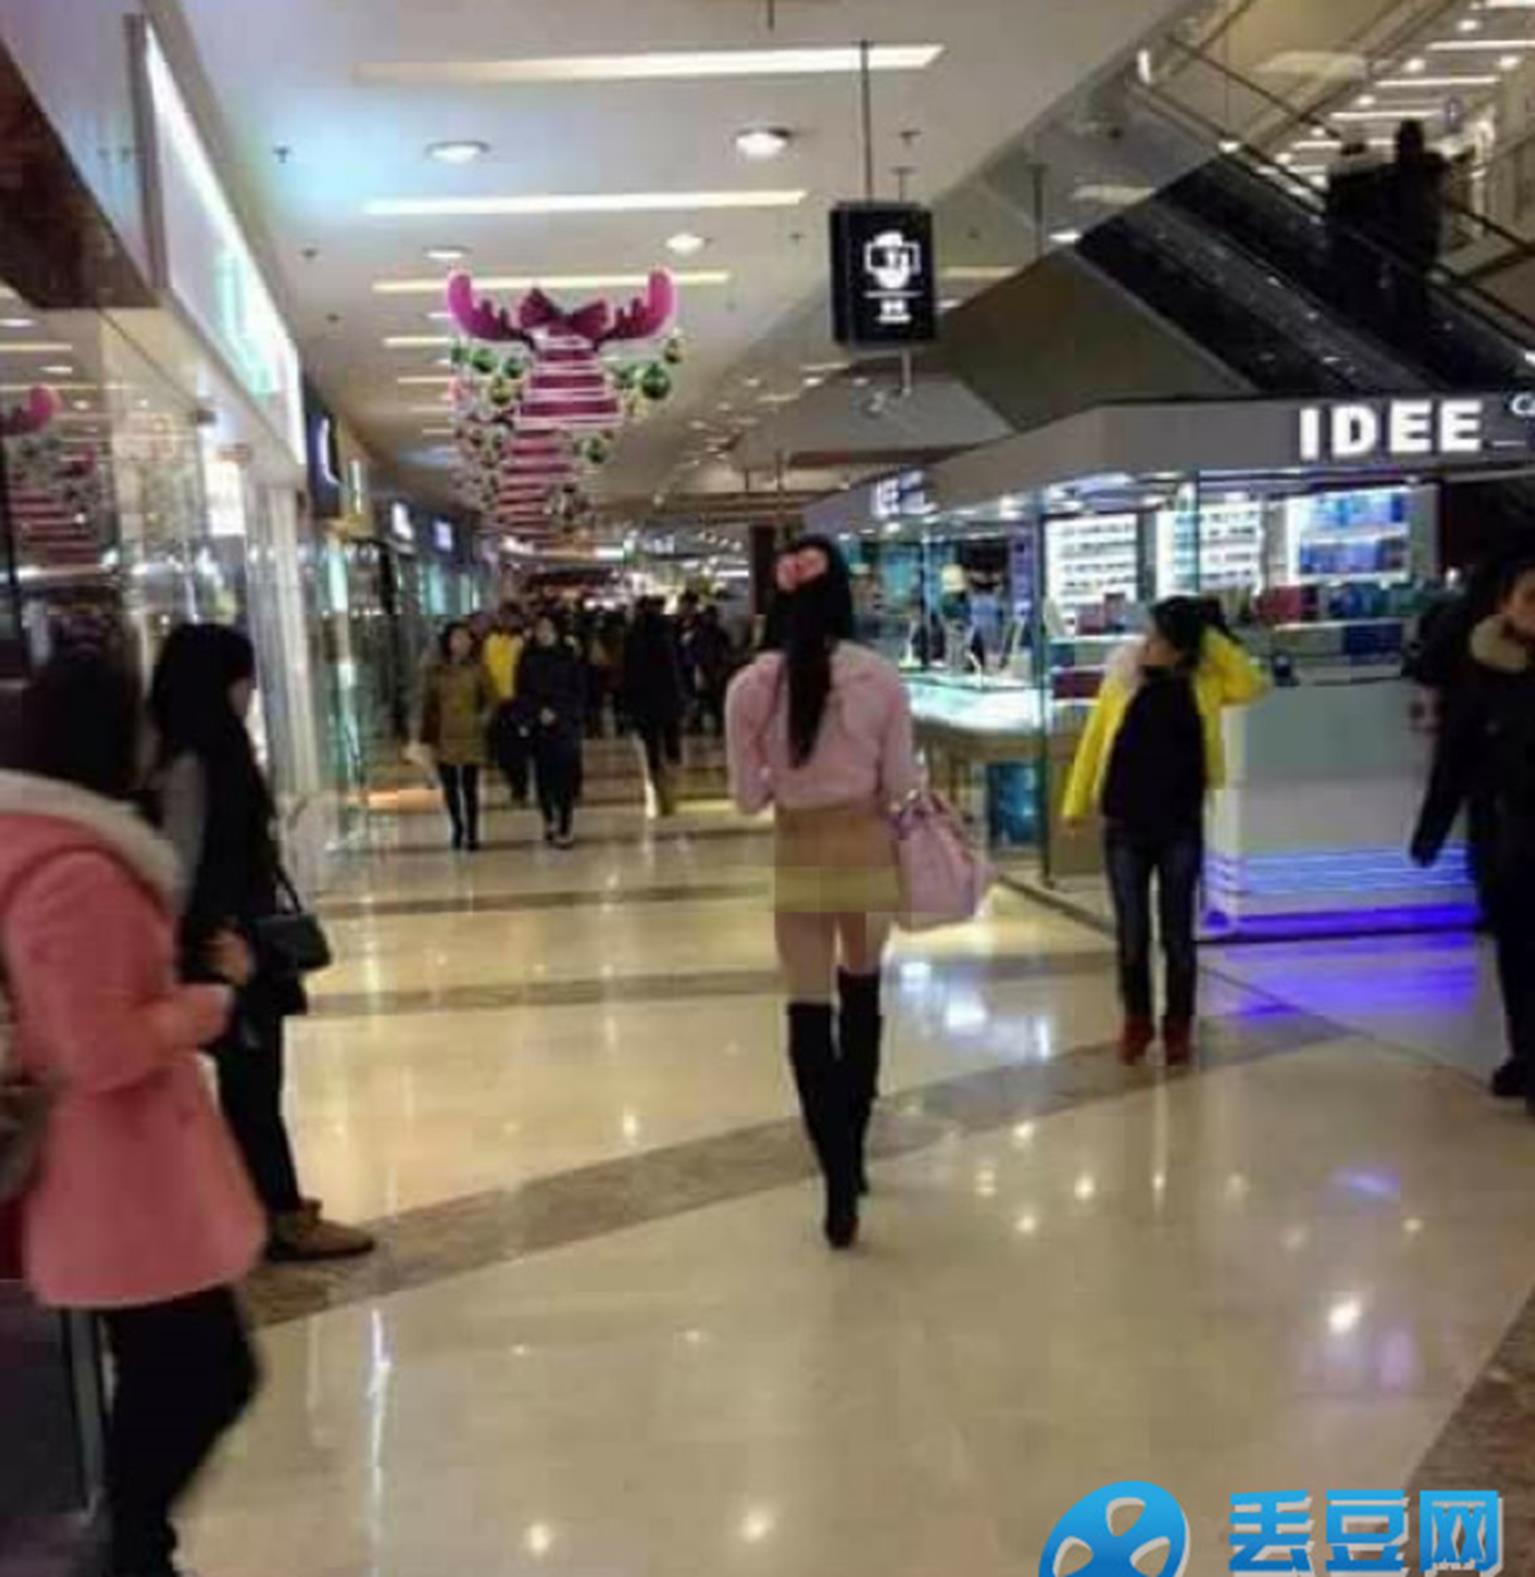 Thảm họa thời trang Trung Quốc: Cả đàn ông lẫn đàn bà đều khoe nội y khi ra đường-5